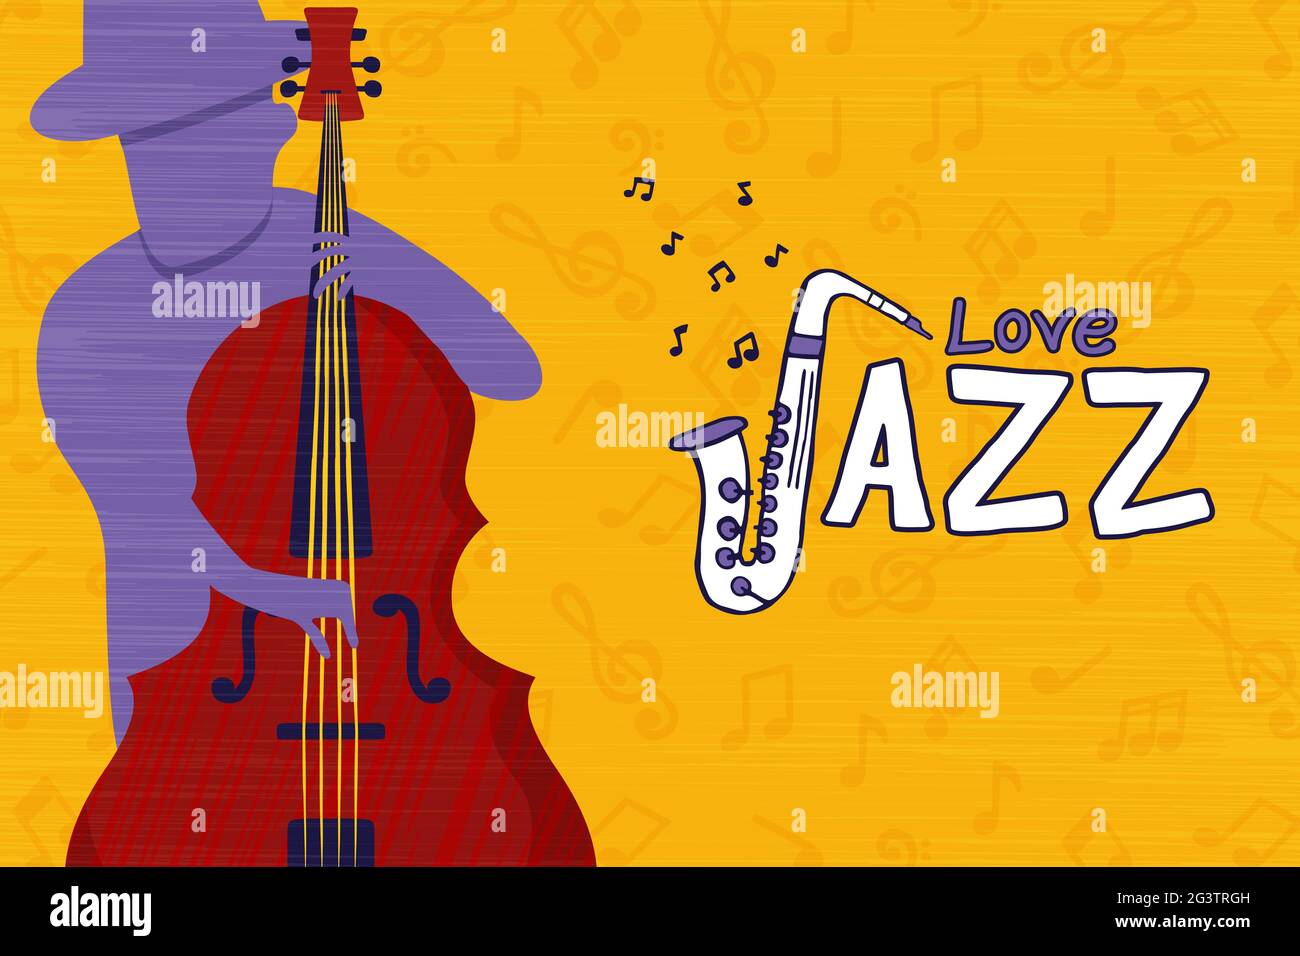 Jazz Musik Liebe Illustration Konzept der Band-Mitglied Charakter spielen Cello Musikinstrument im Retro-Cartoon-Stil. Stock Vektor